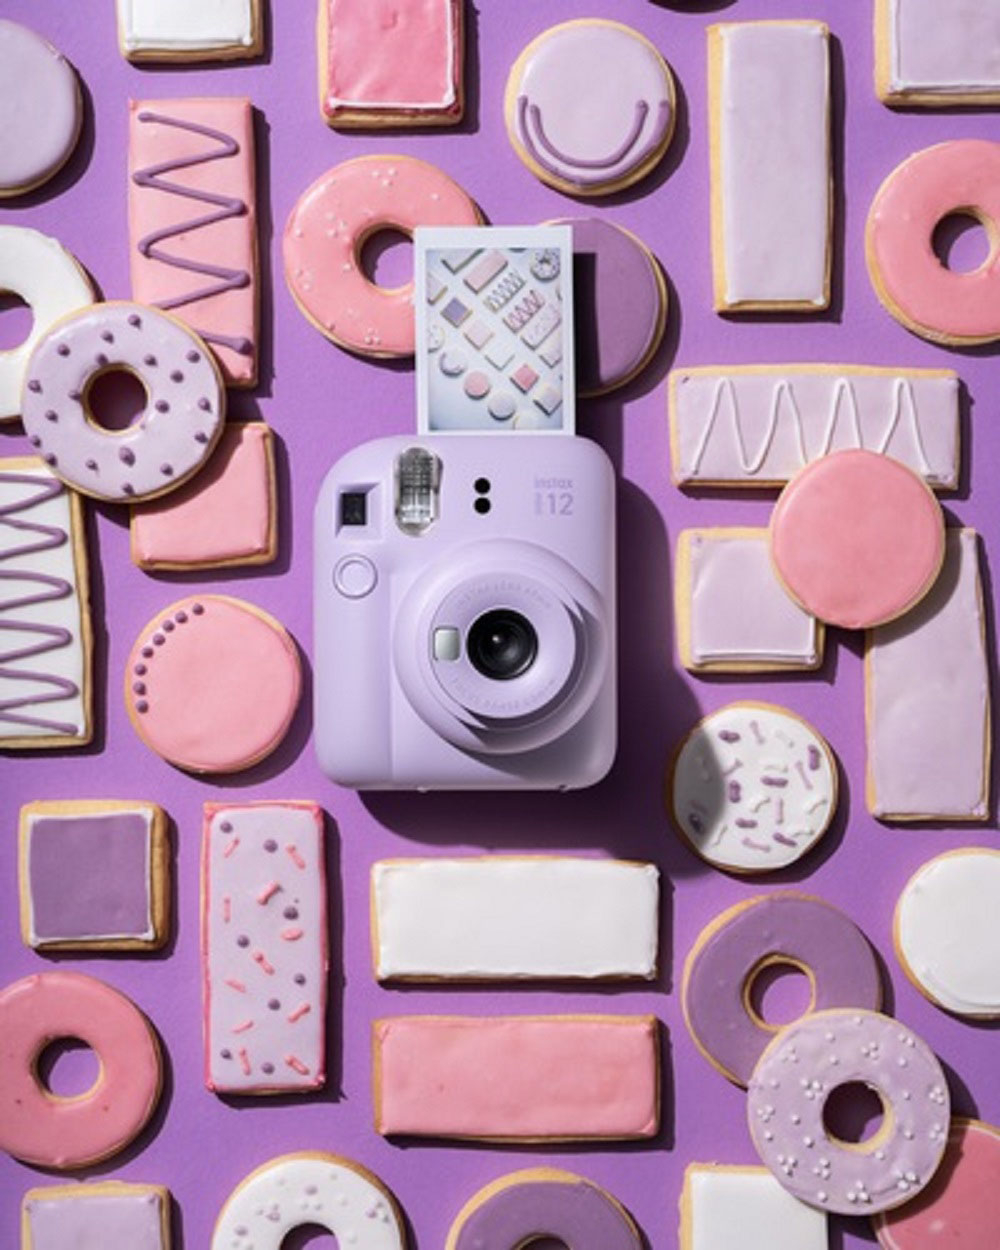 Fujifilm Instax Mini 12 Instant Film Camera Pink 16806250 - Best Buy